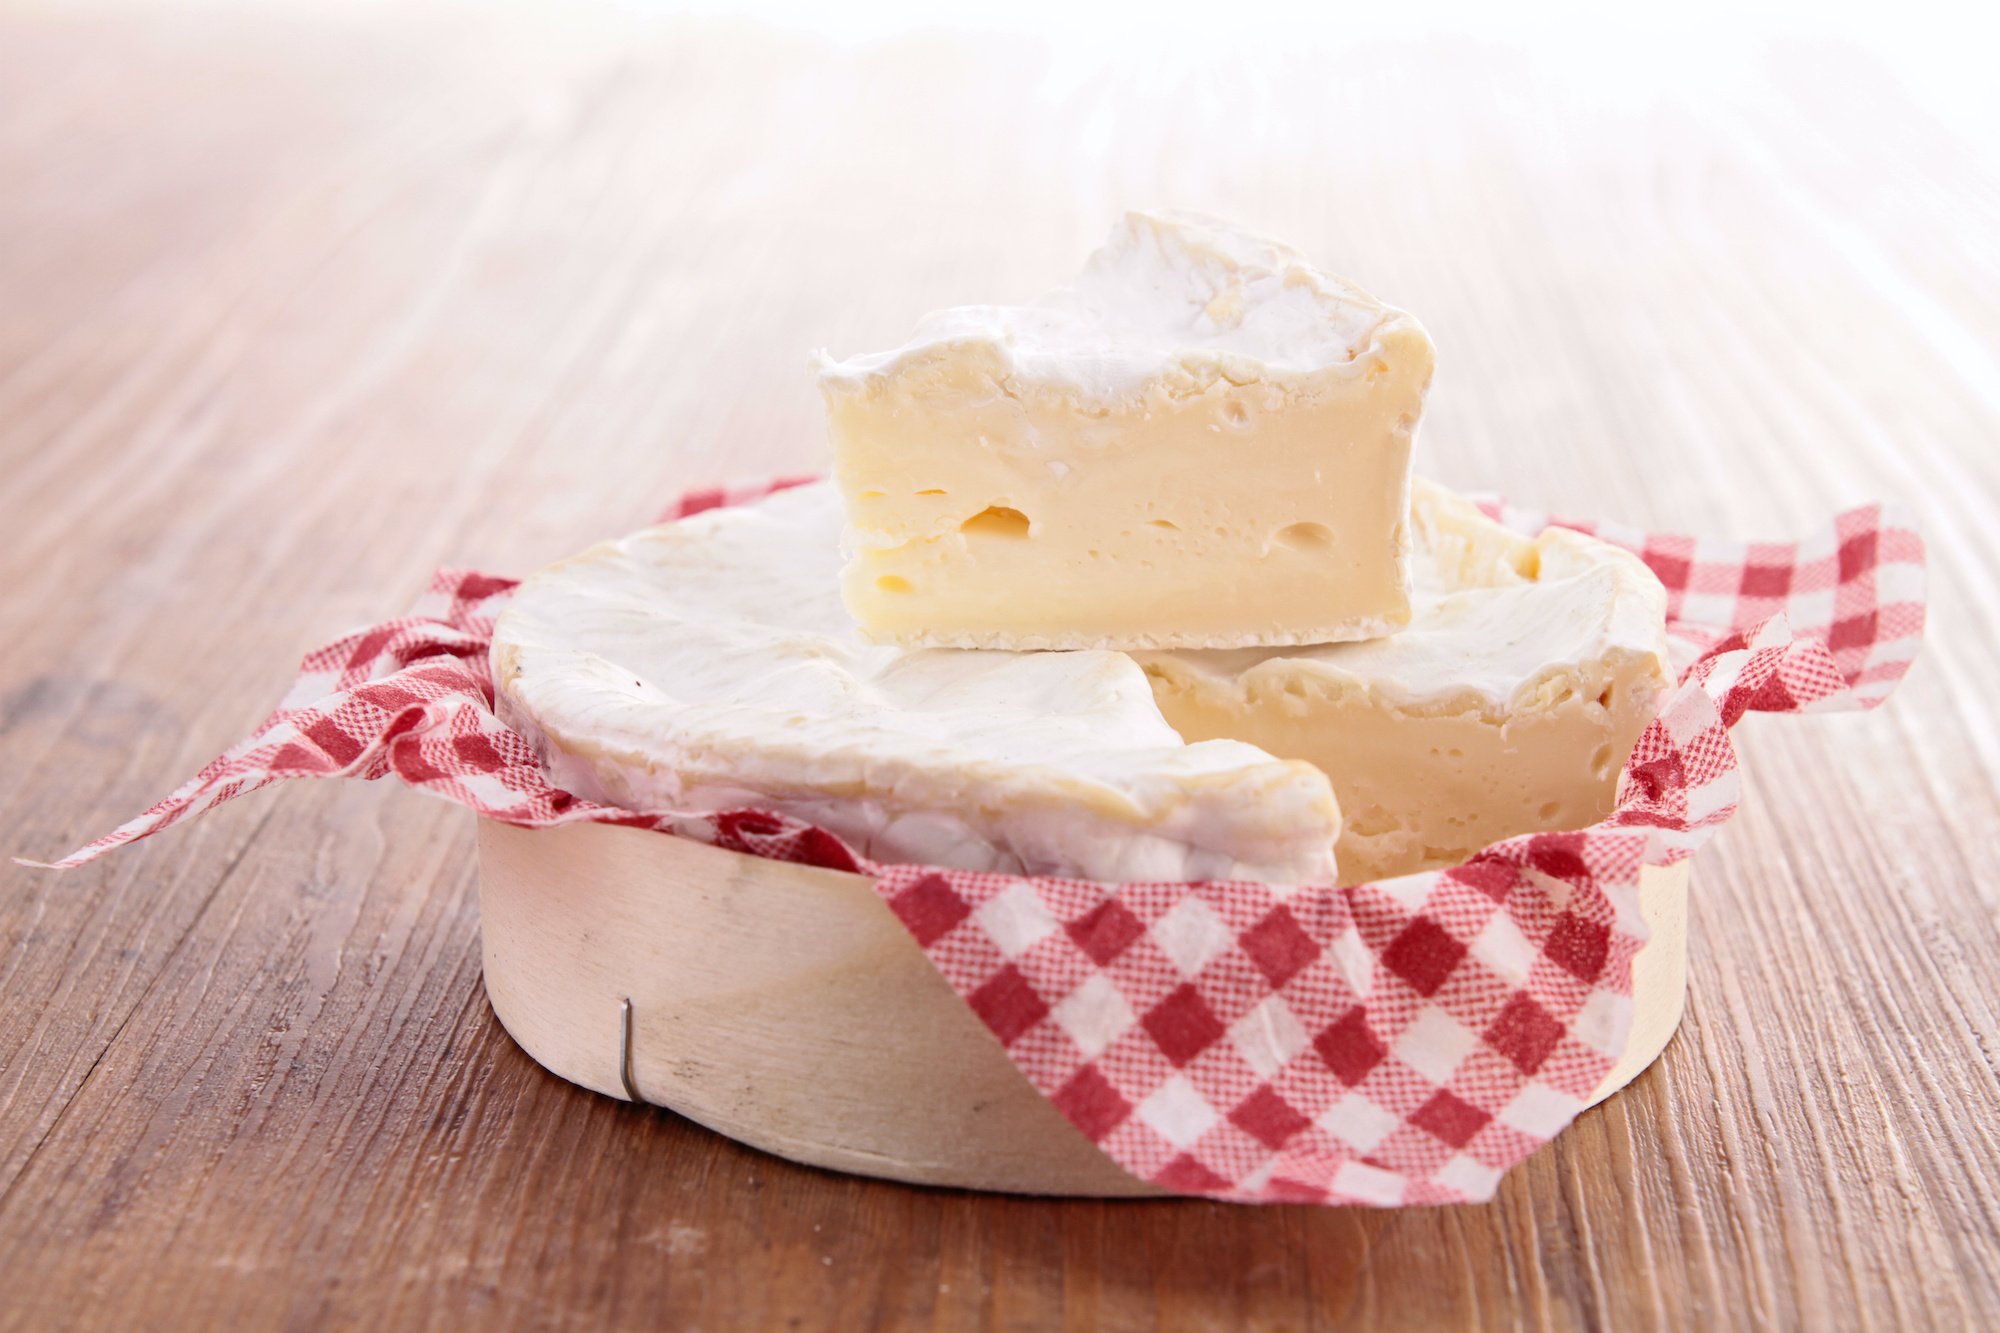 La moisissure de camembert a été spécialement adaptée à la production de fromage. © M.studio, Adobe Stock